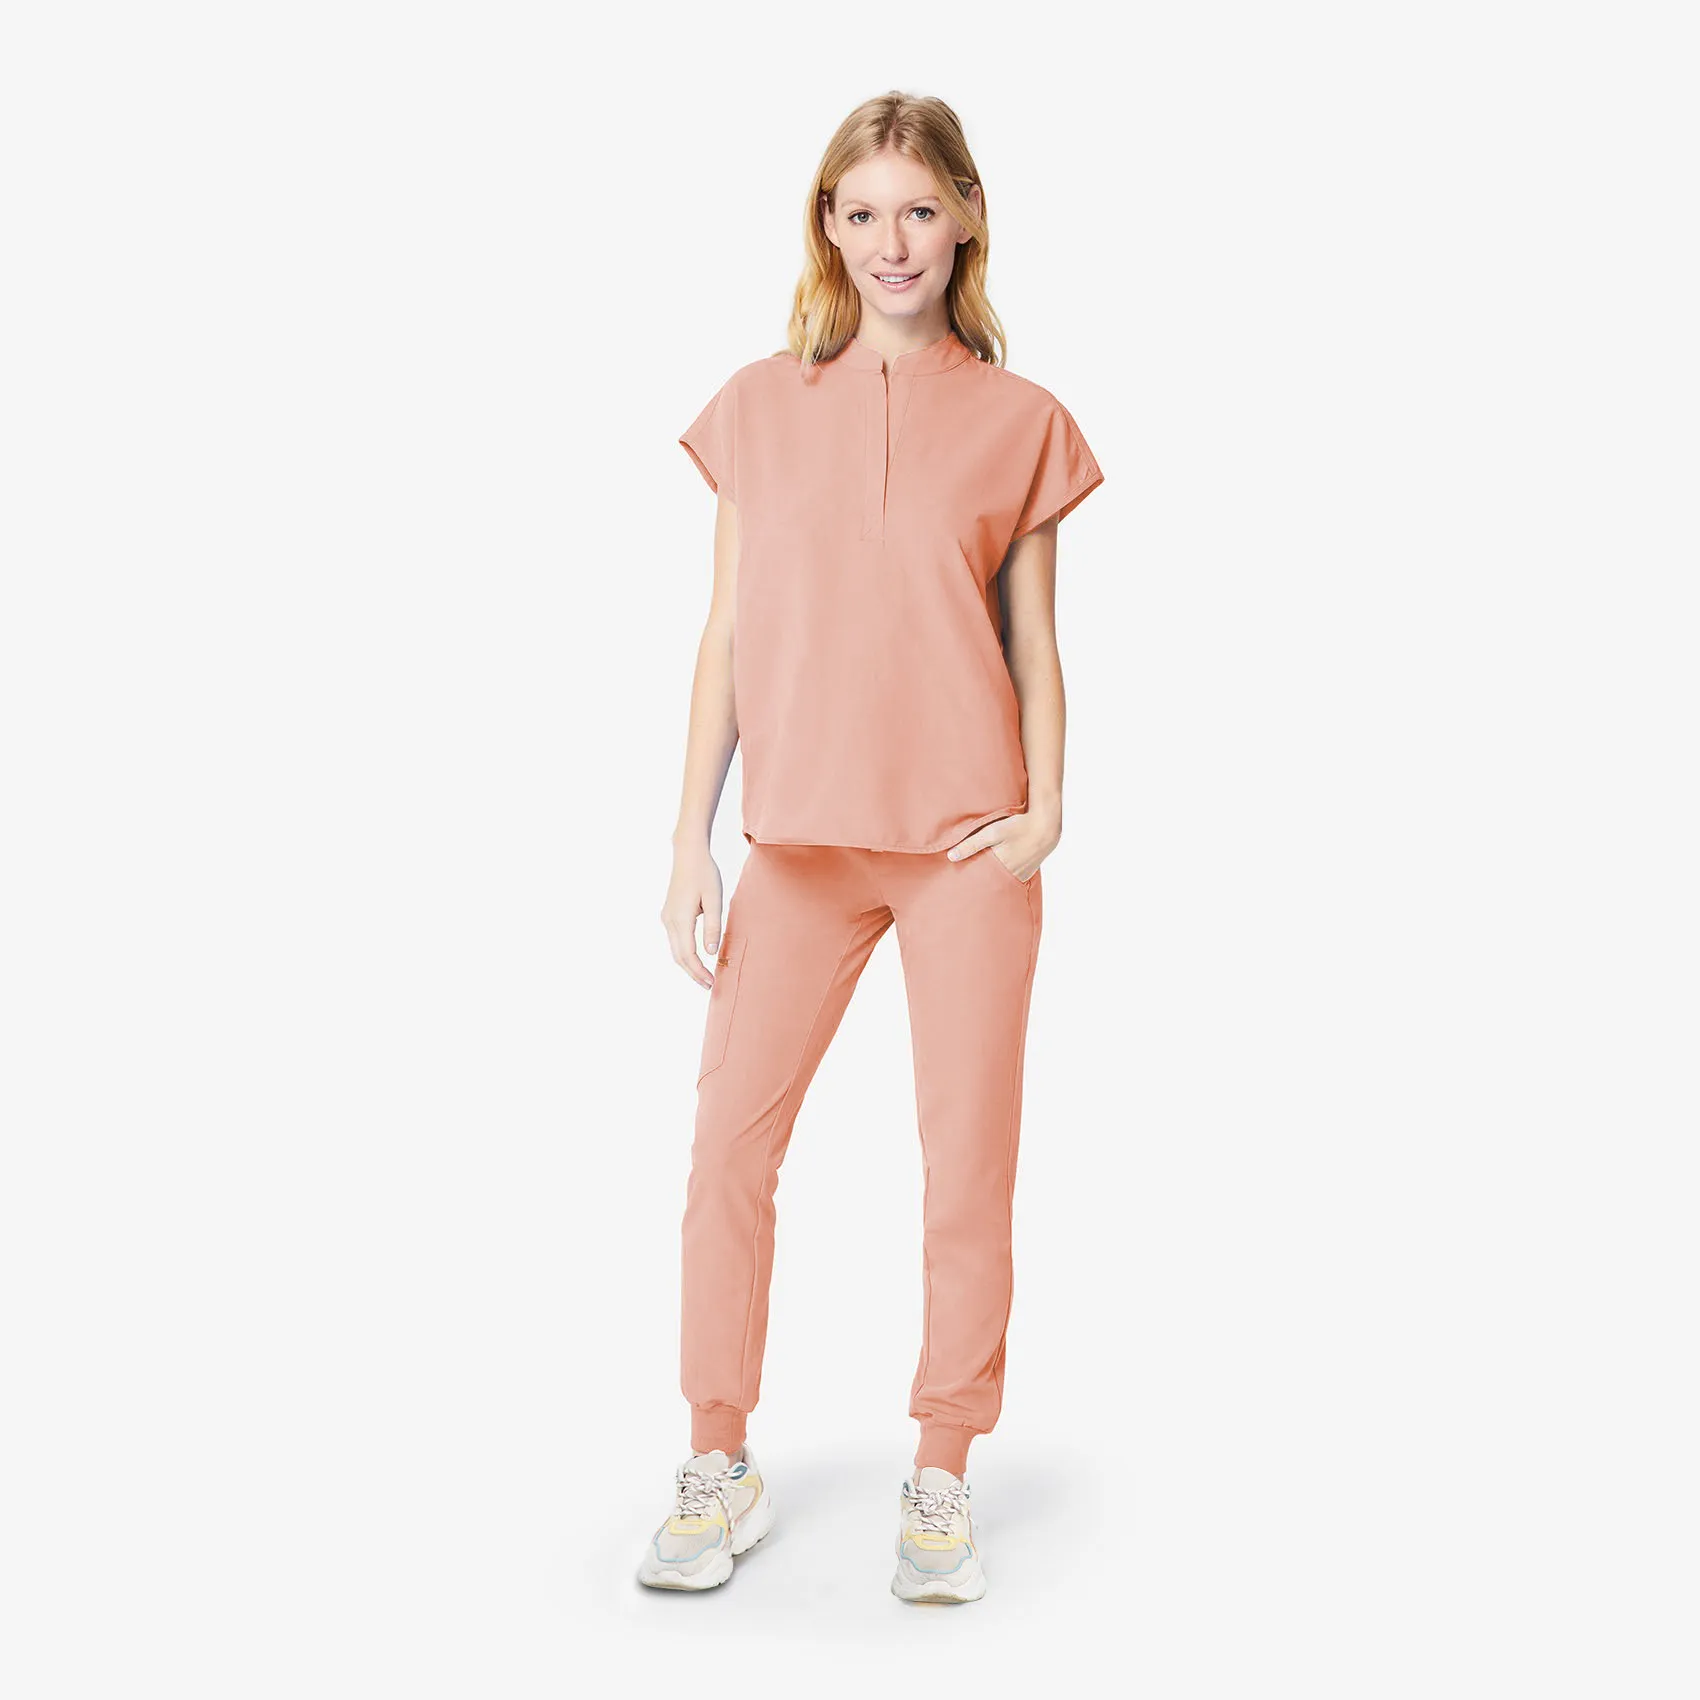 Pantaloni e top a due pezzi da donna Eithexu Scrub infermieristico elasticizzato di alta qualità all'ingrosso Set di uniformi mediche Uniformi a 4 vie alla moda